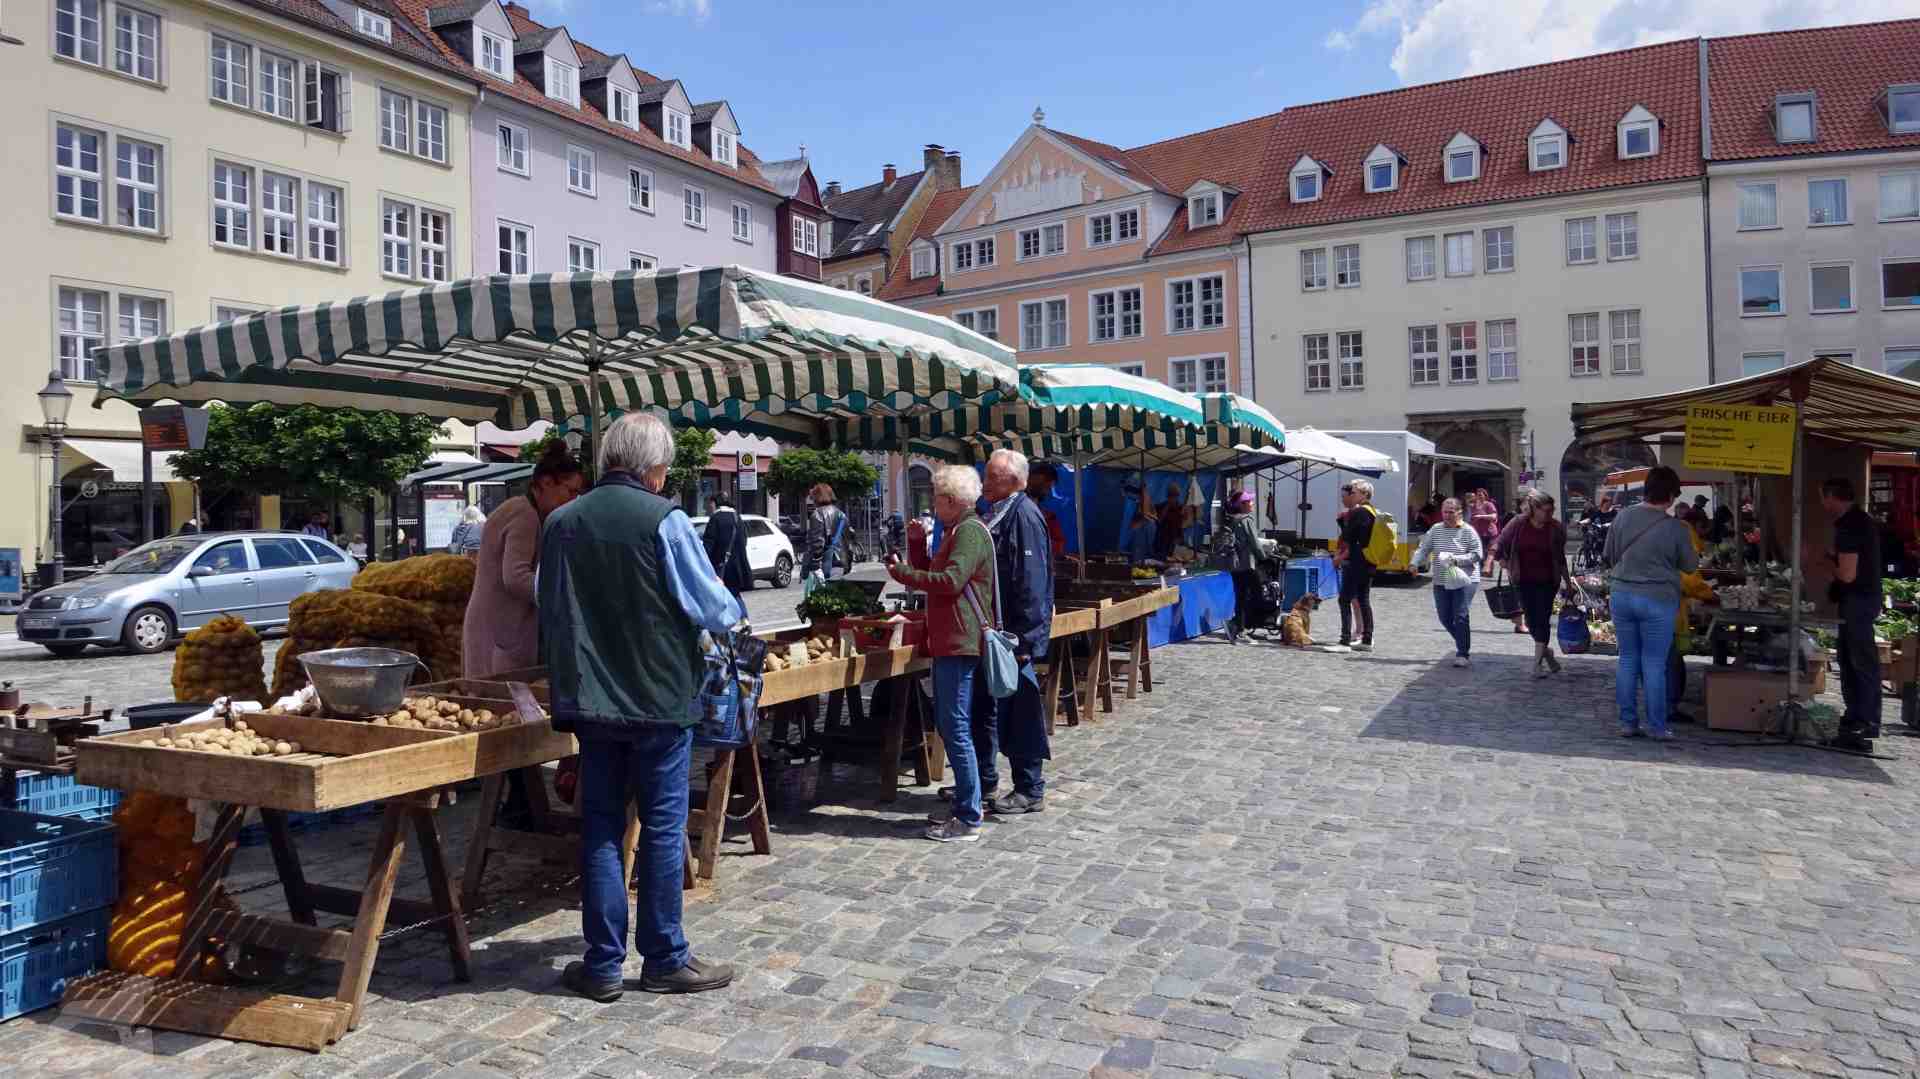 Marktstände auf dem Altstadtmarkt